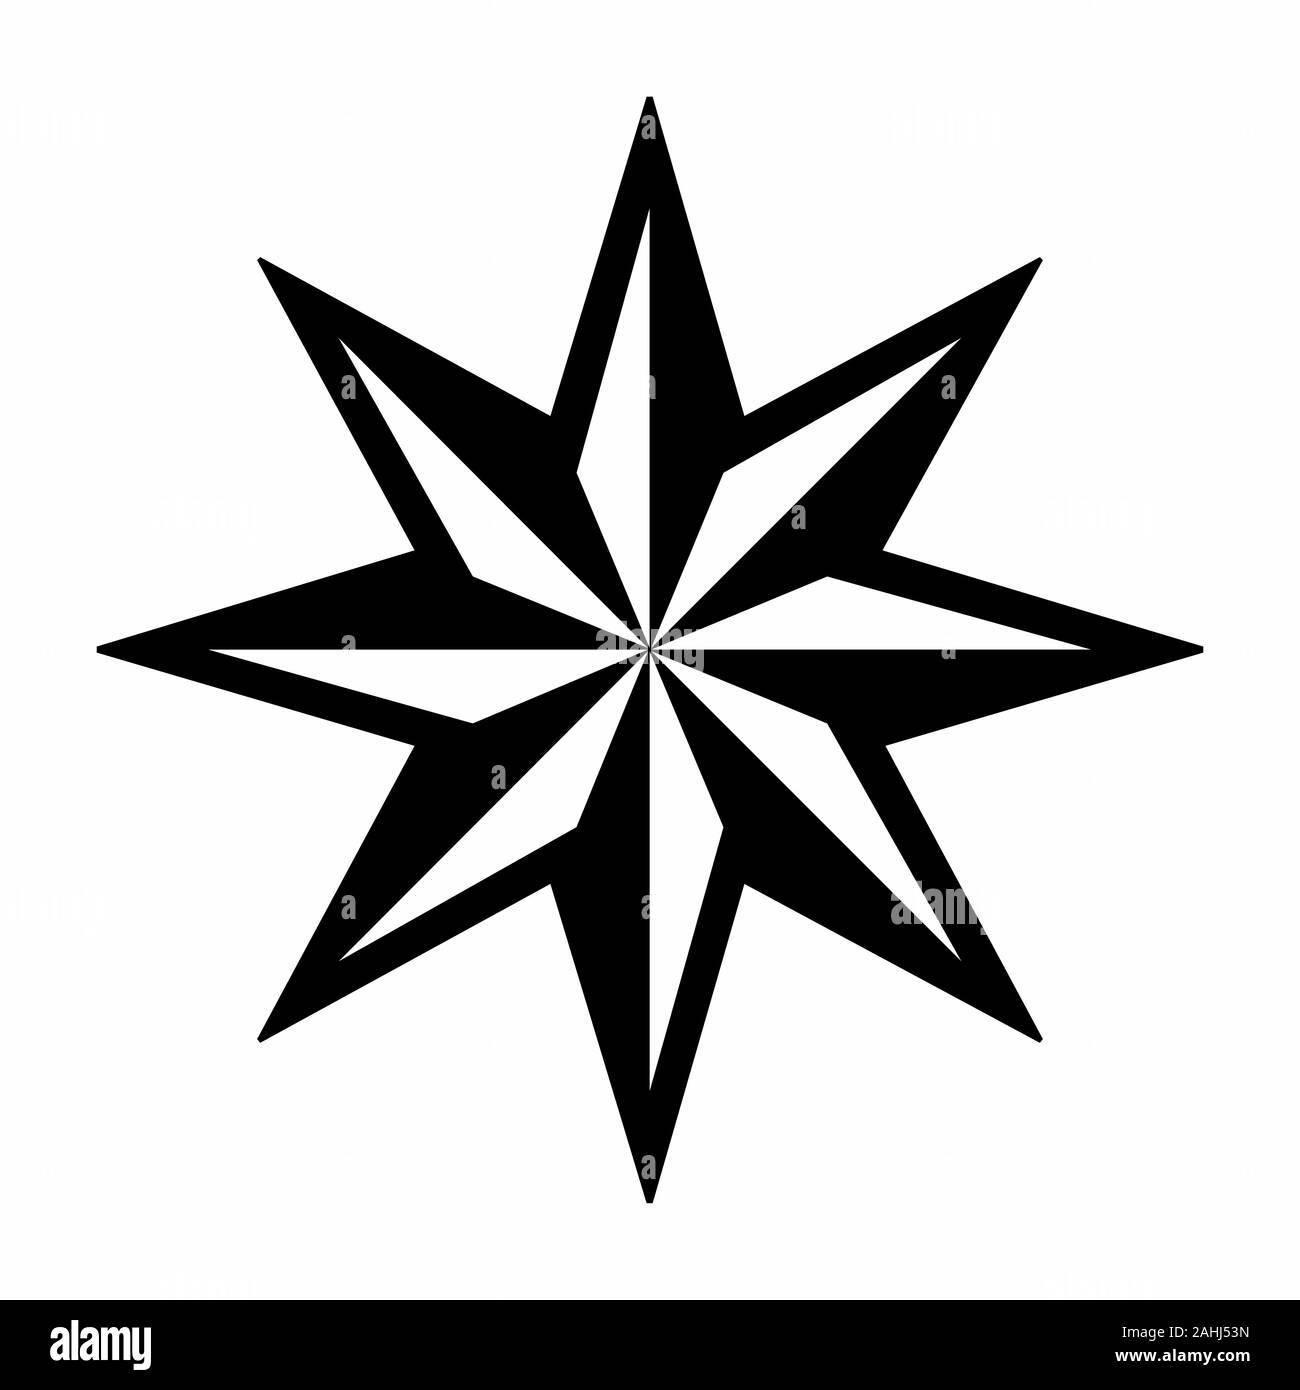 Estrella de 8 puntas Imágenes de stock en blanco y negro - Alamy